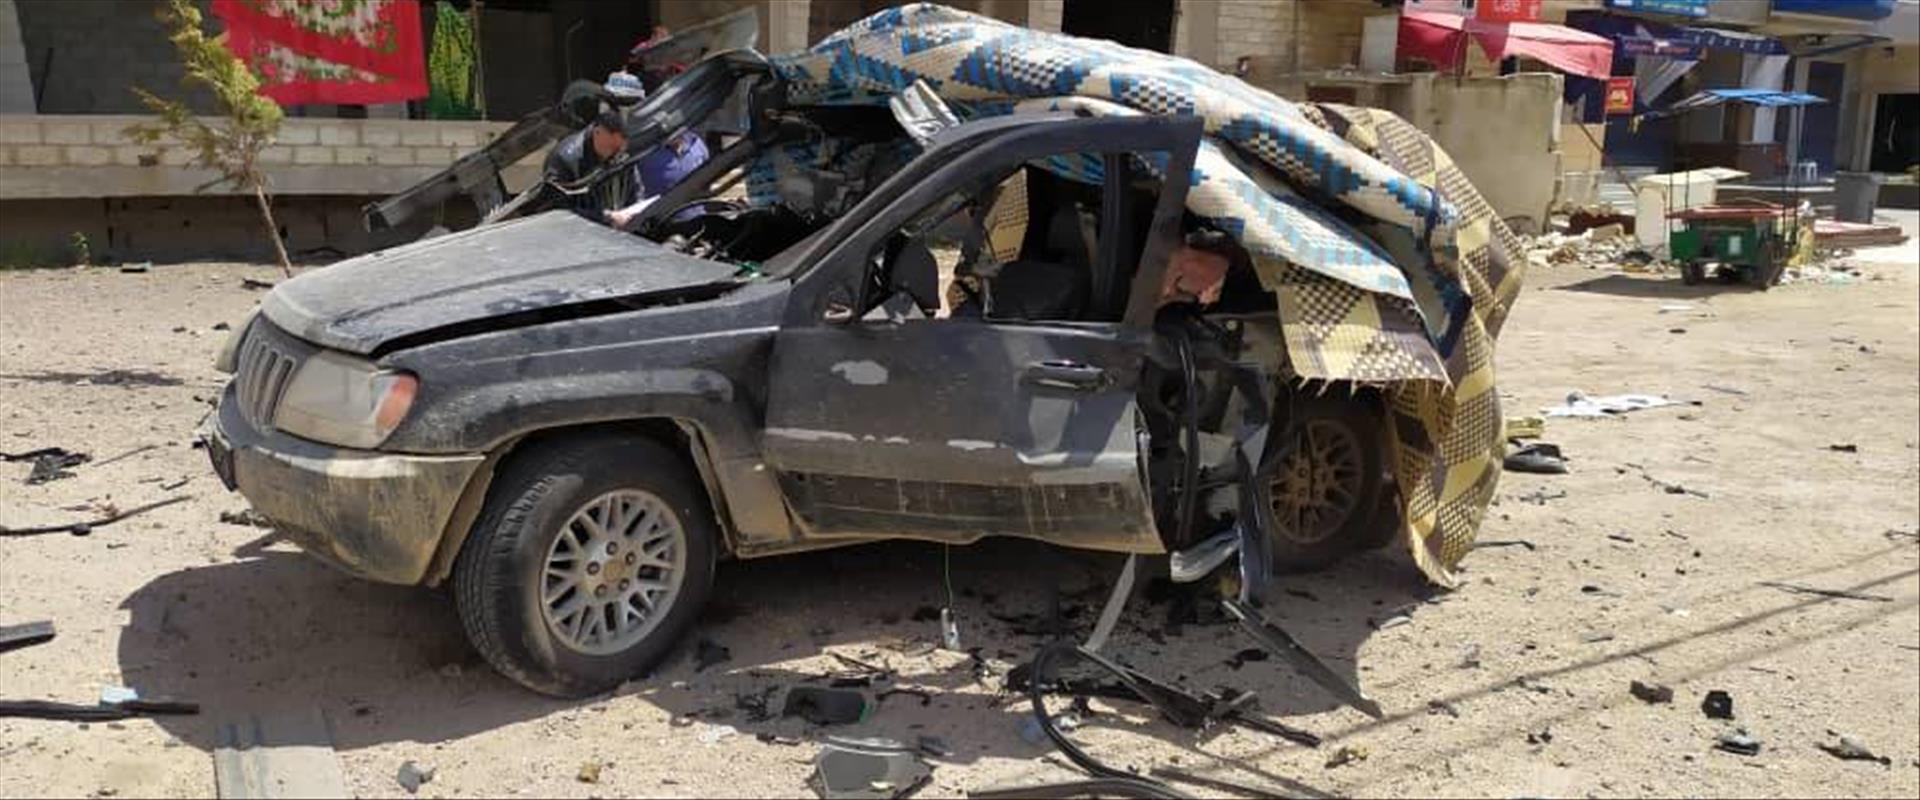 הרכב שהתקף בגבול סוריה - לבנון